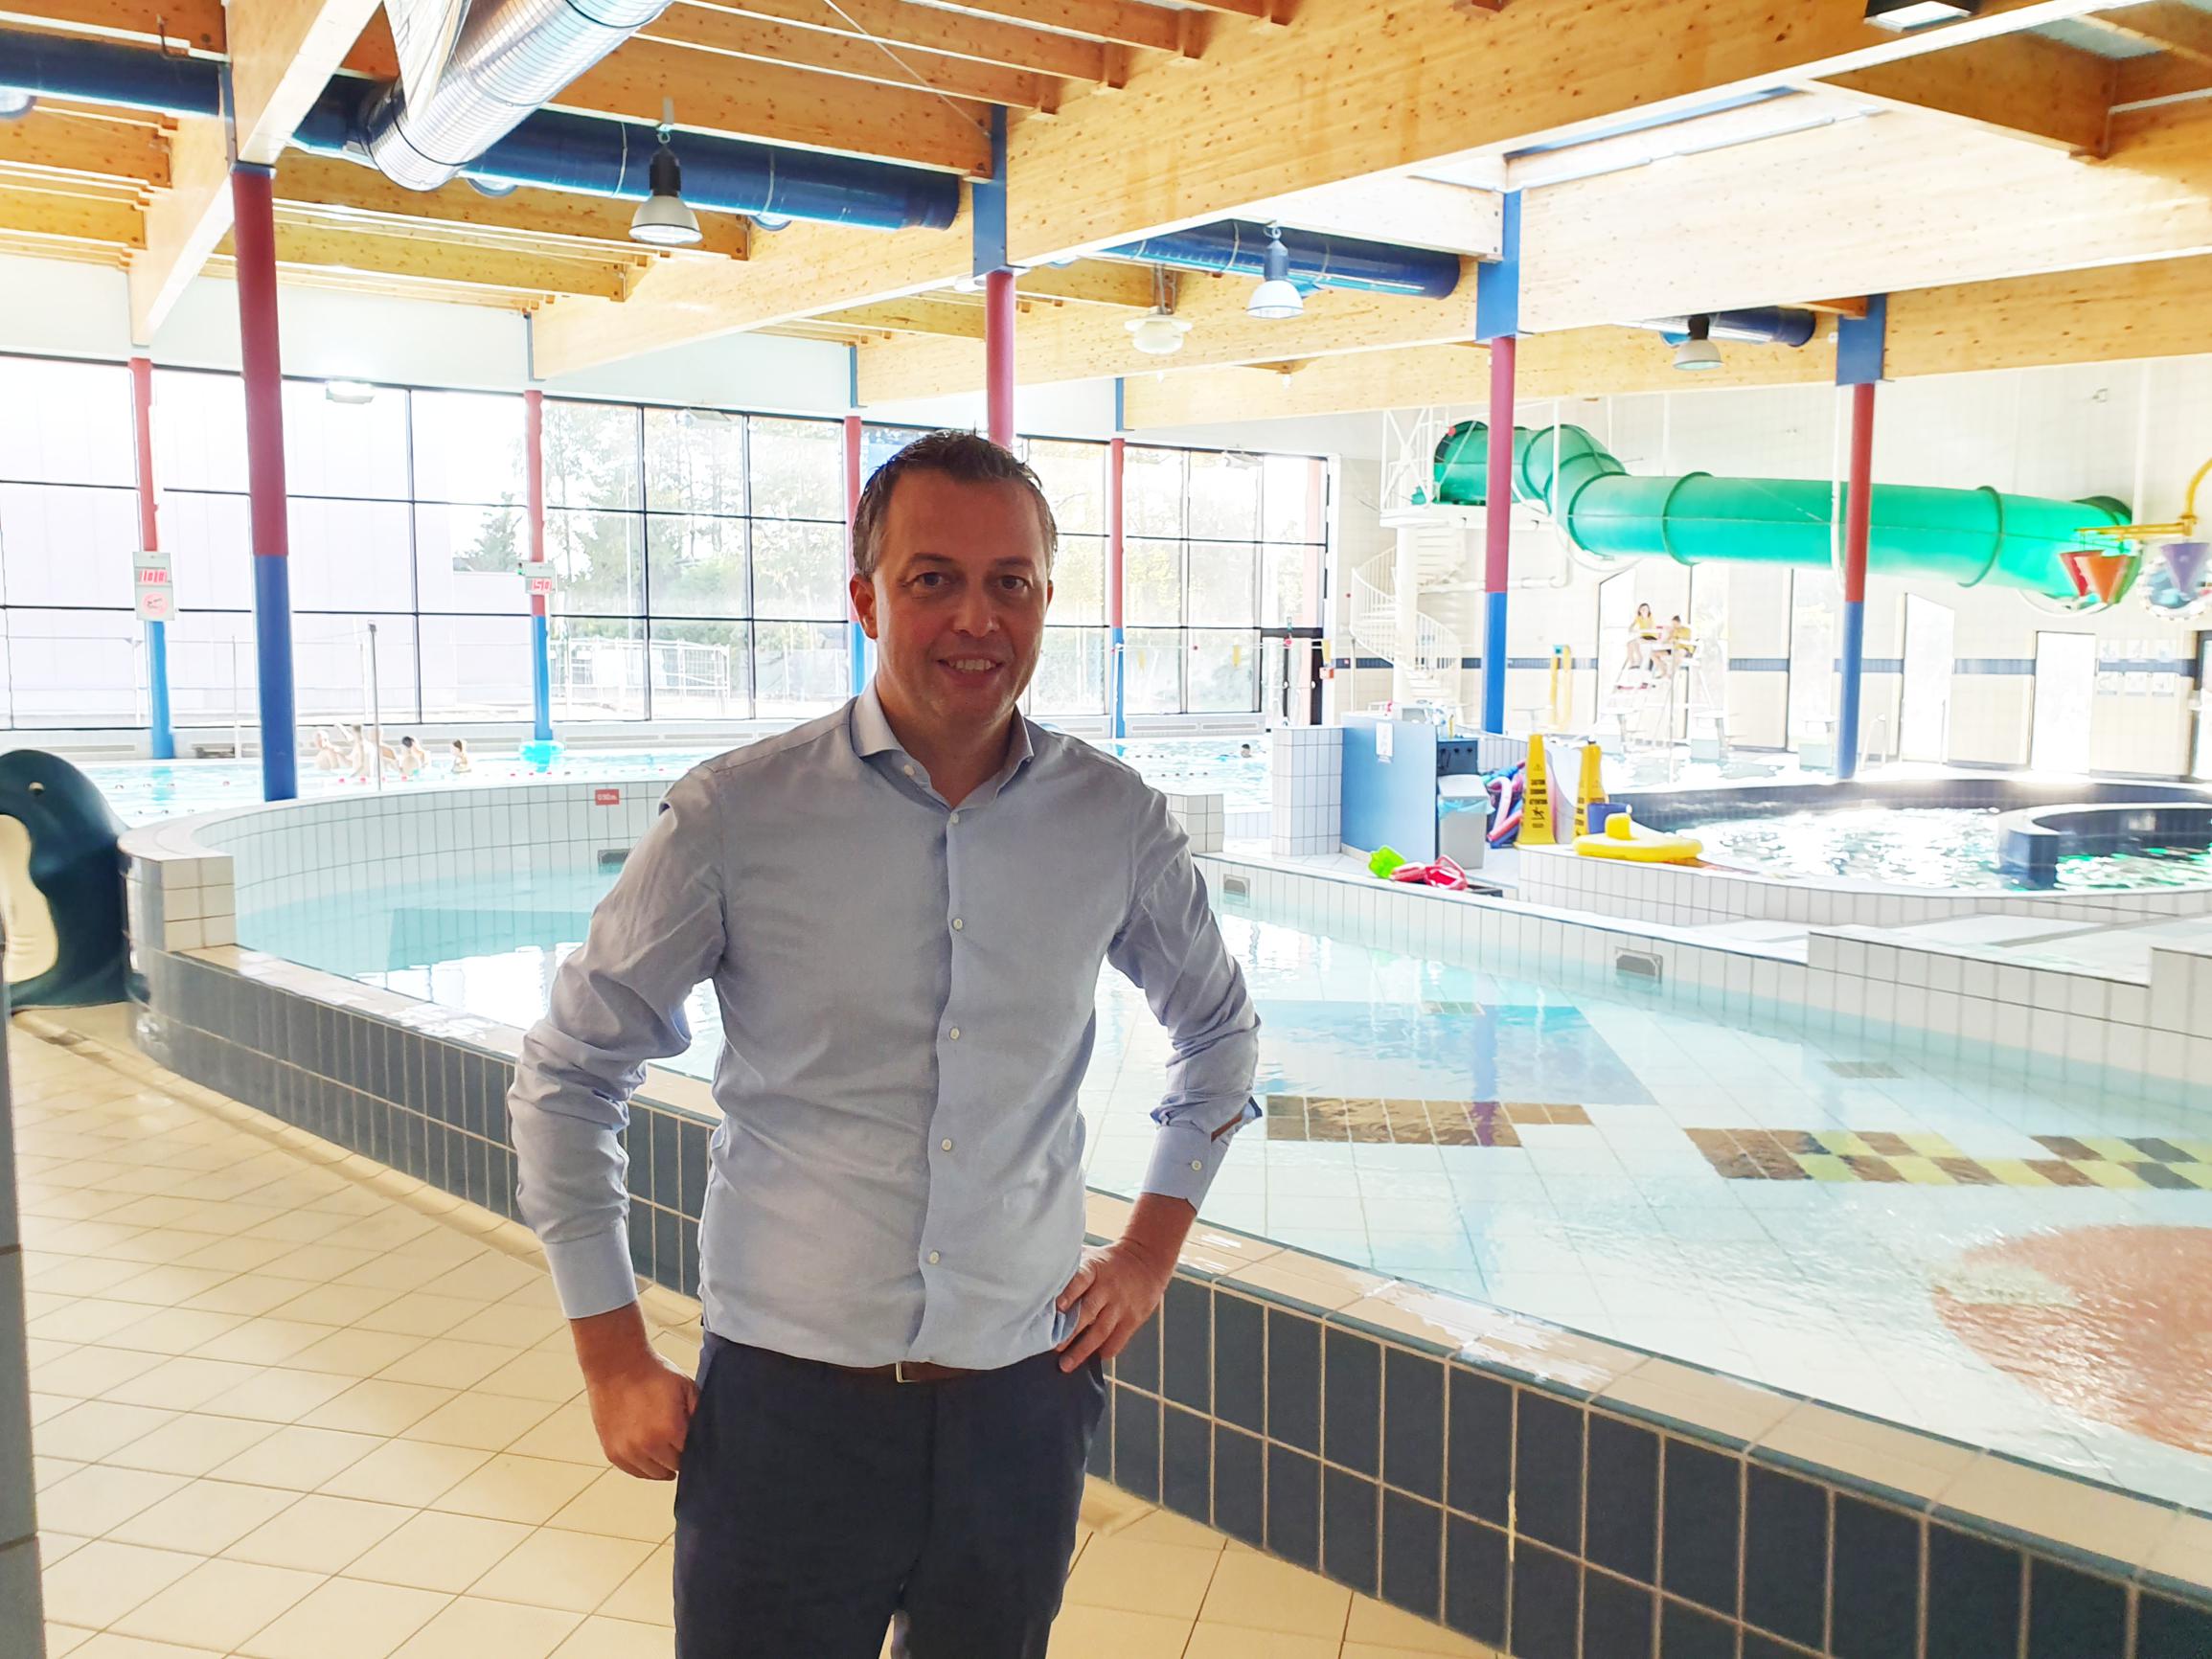 “Buurgemeenten moeten renovatie zwembad helpen financieren”